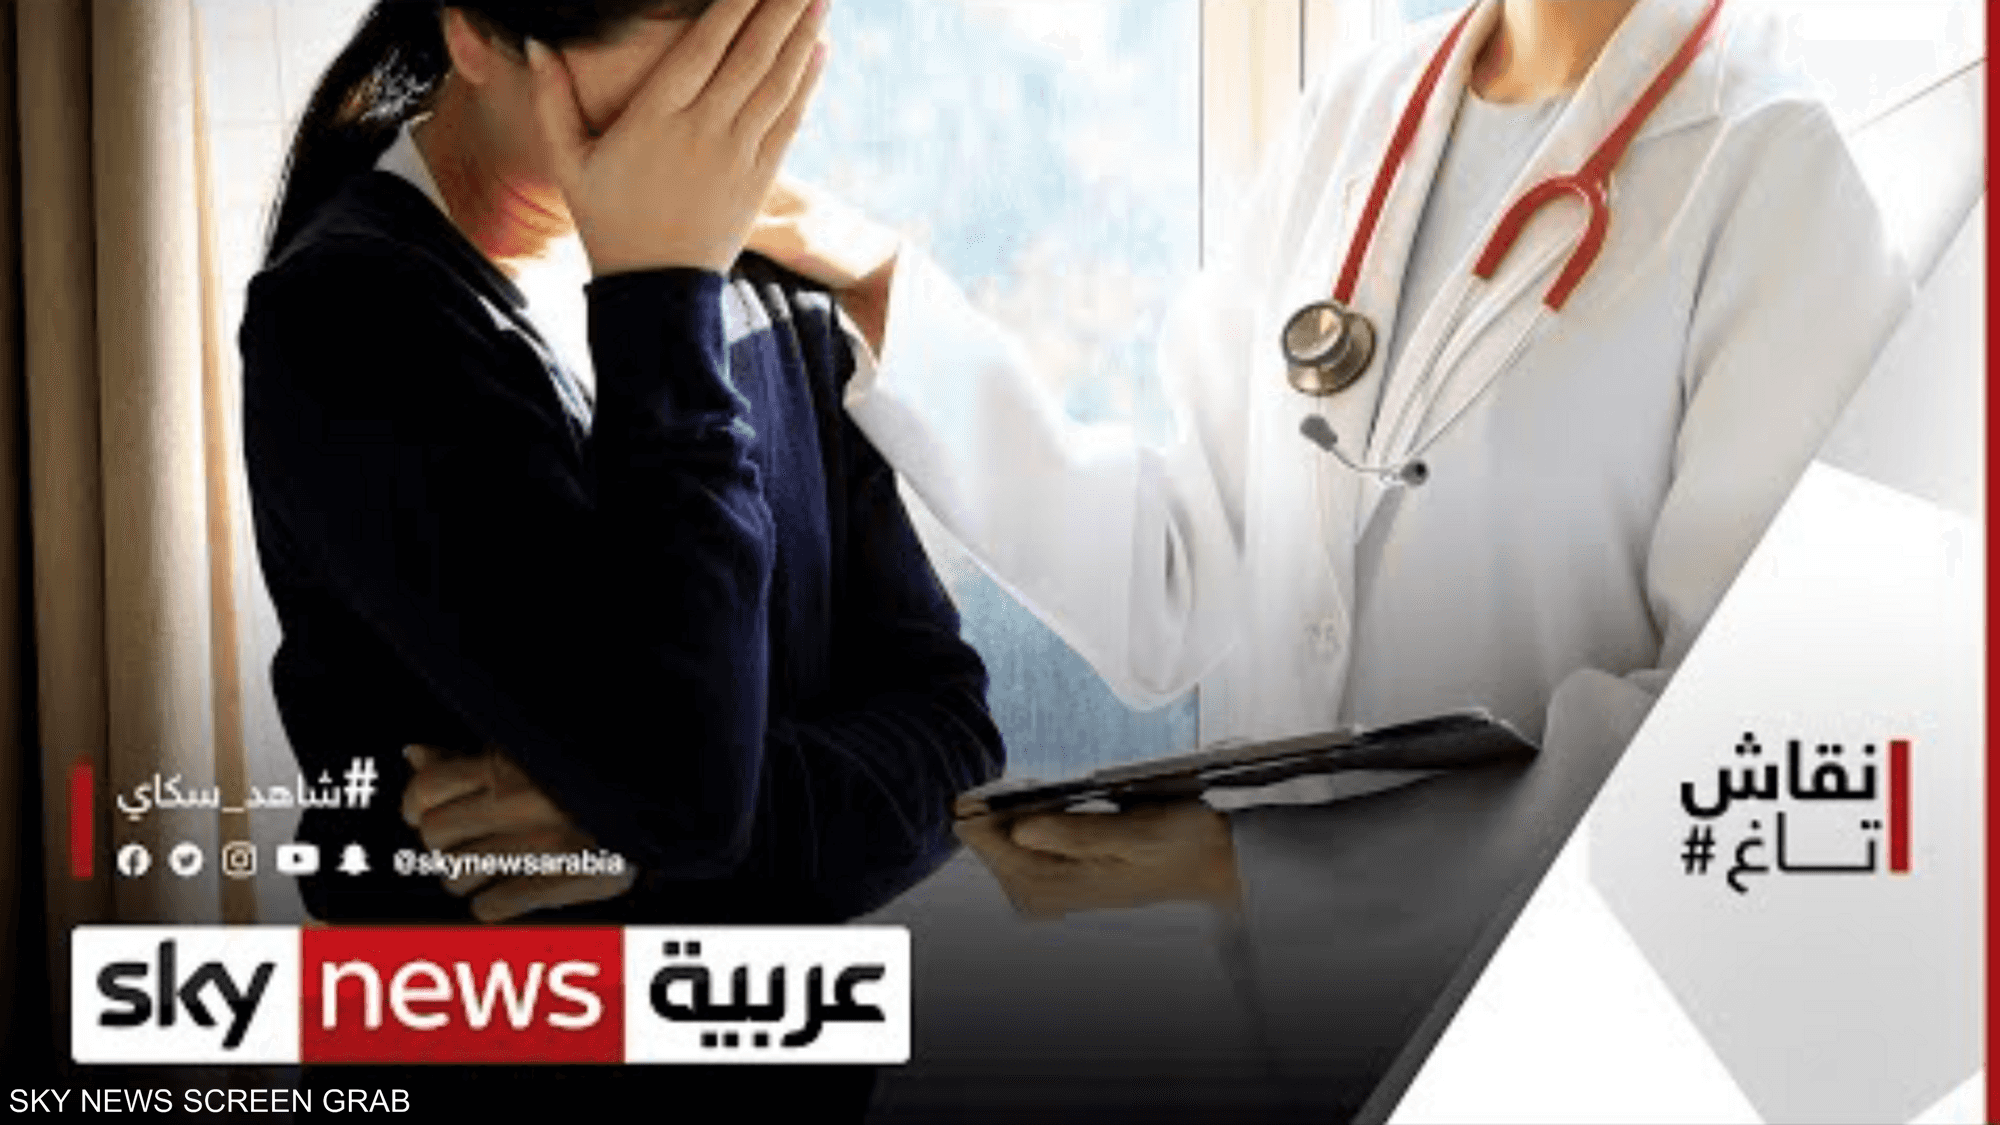 وفاة وائل الإبراشي تعيد قضية الأخطاء الطبية للواجهة